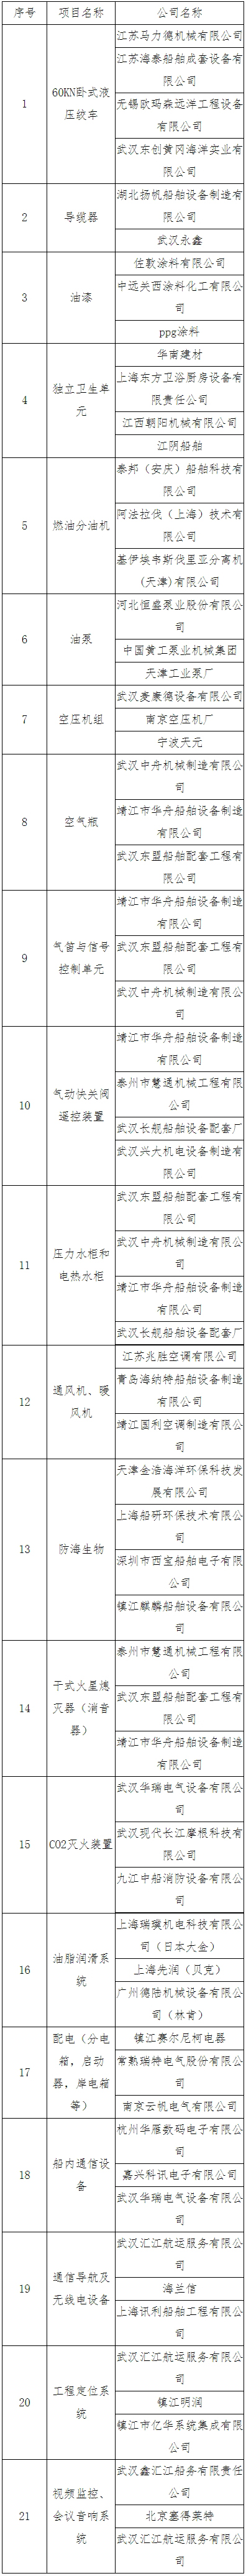 长江航道局12方钢索式抓斗挖泥船建造项目第二设备采购邀标公告